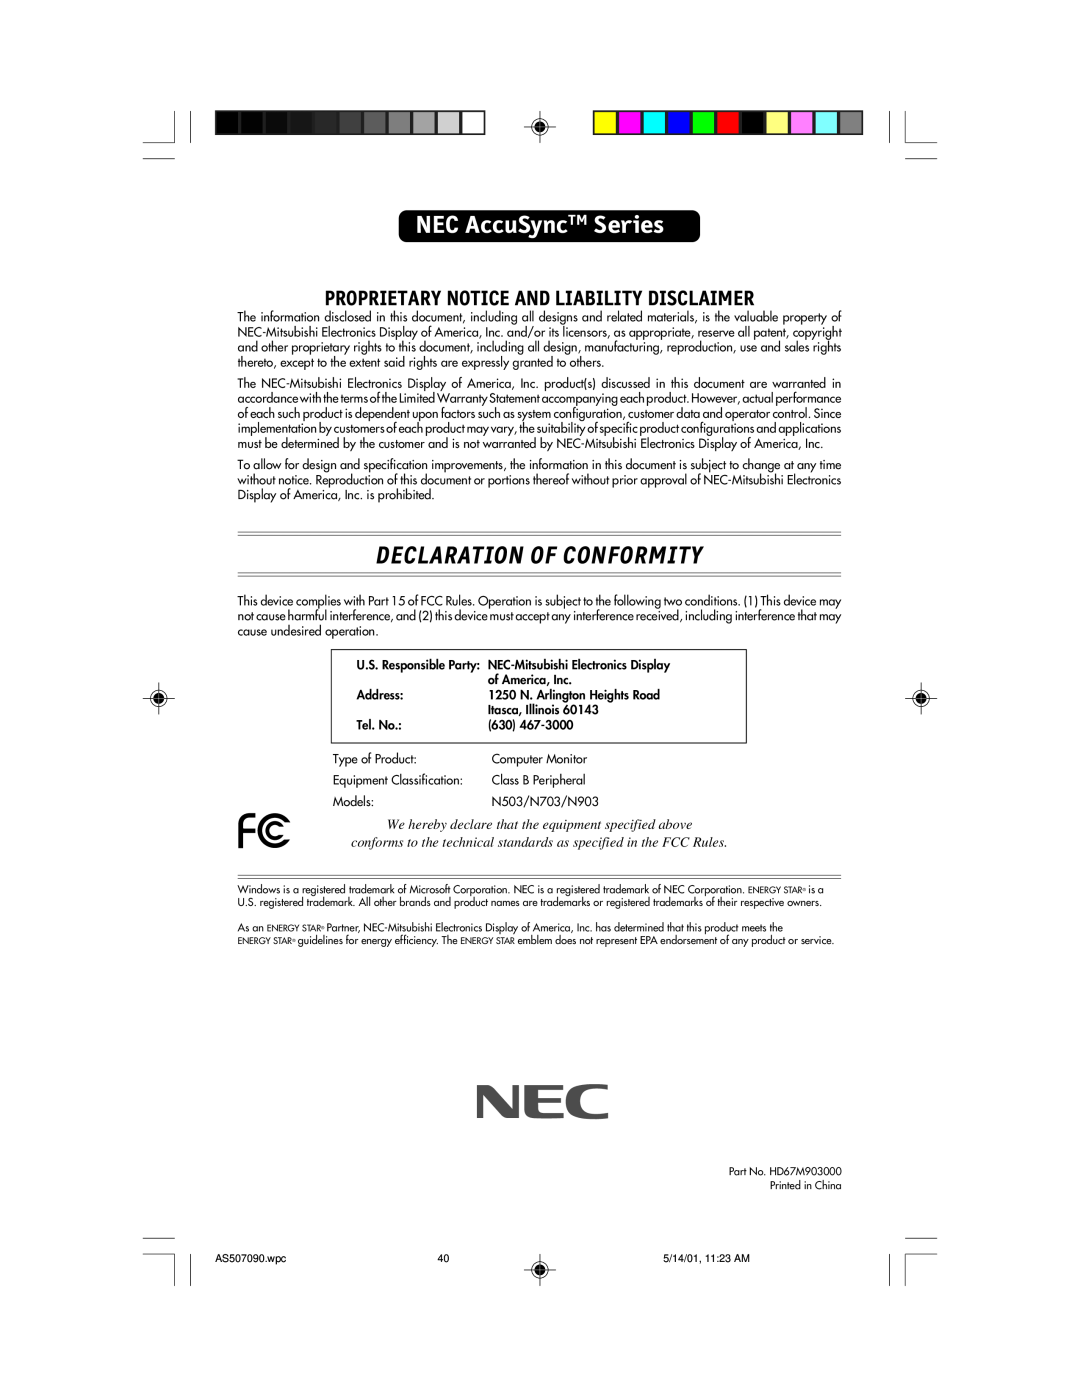 NEC AccuSync 70, AccuSync 90 NEC AccuSyncTM Series, Declaration Of Conformity, Proprietary Notice And Liability Disclaimer 